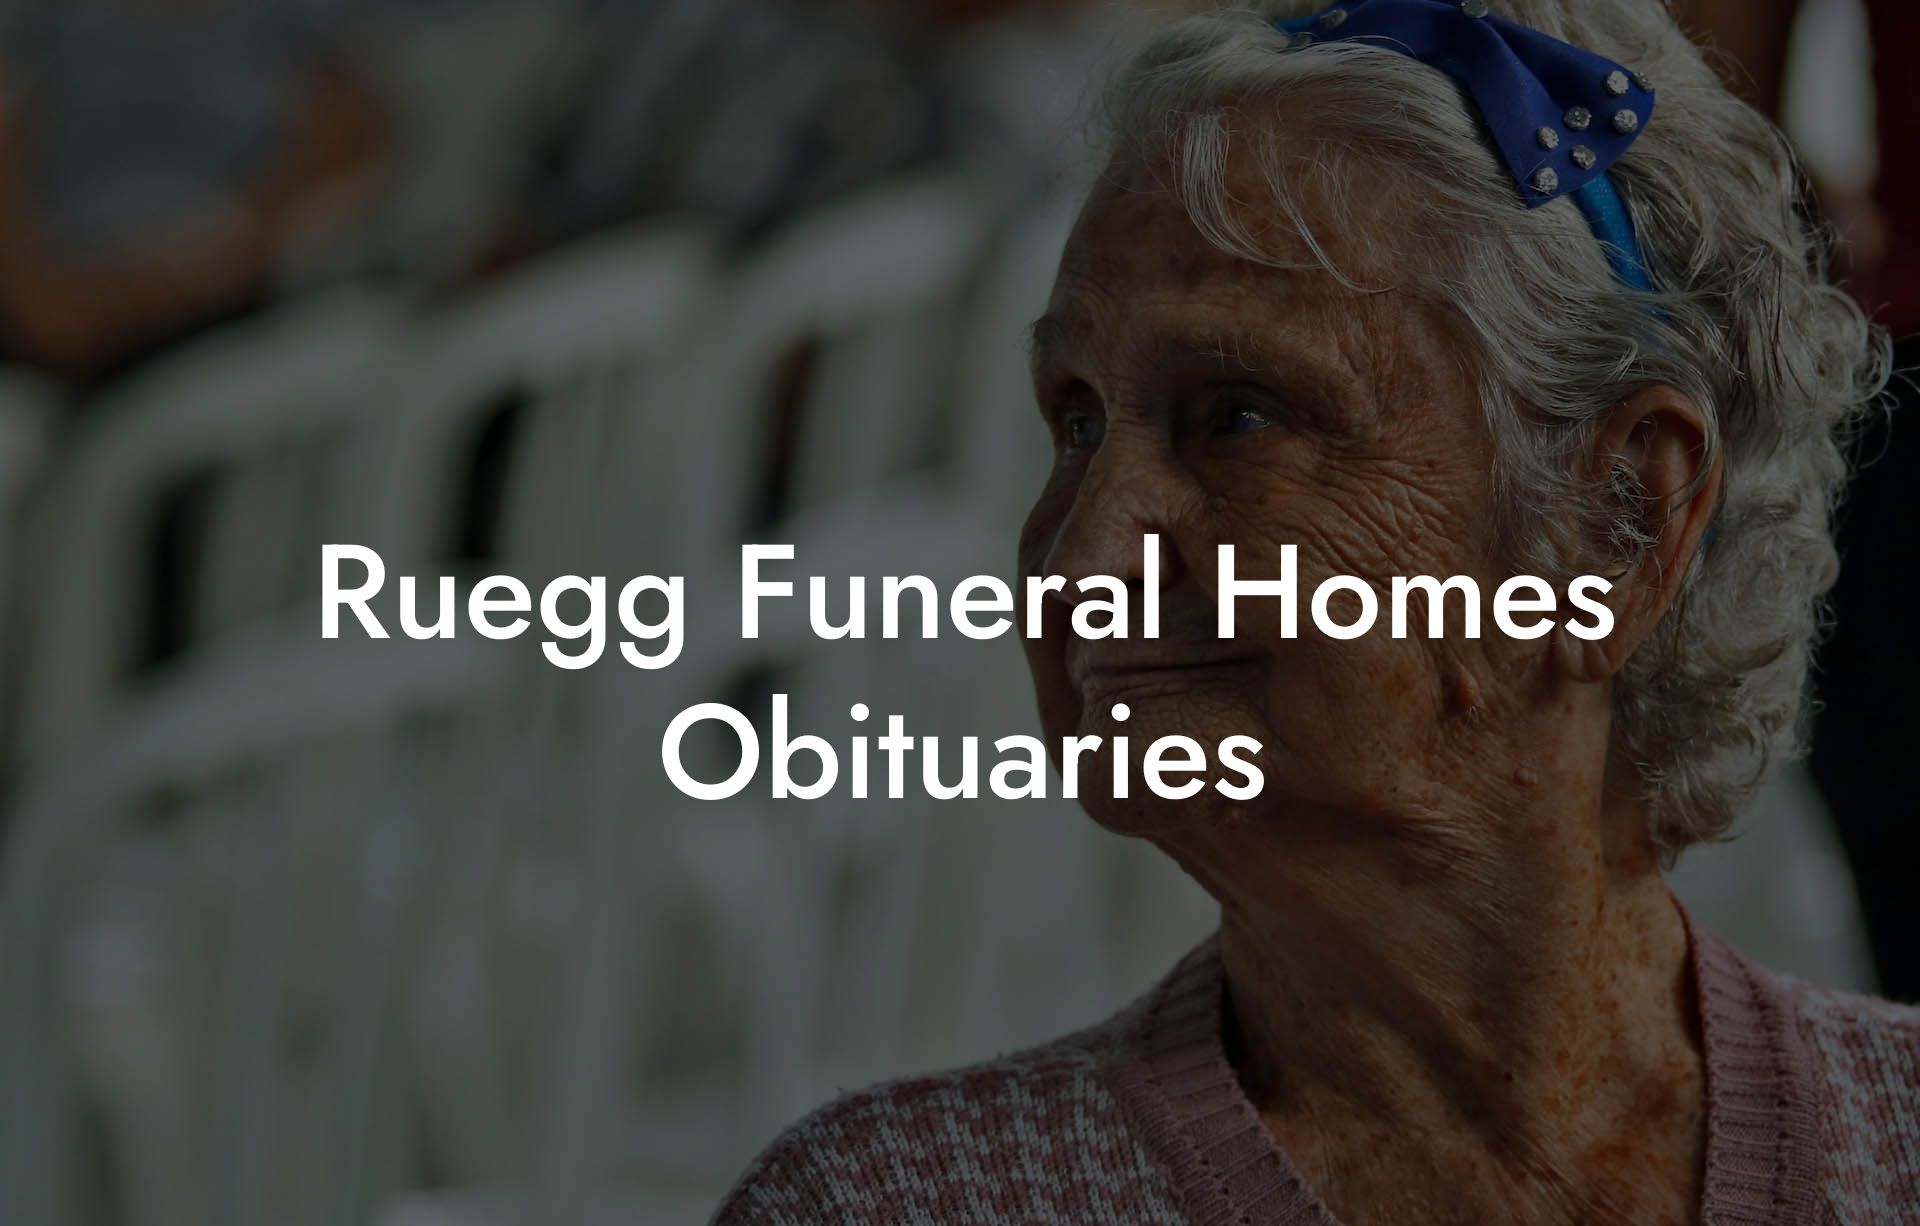 Ruegg Funeral Homes Obituaries